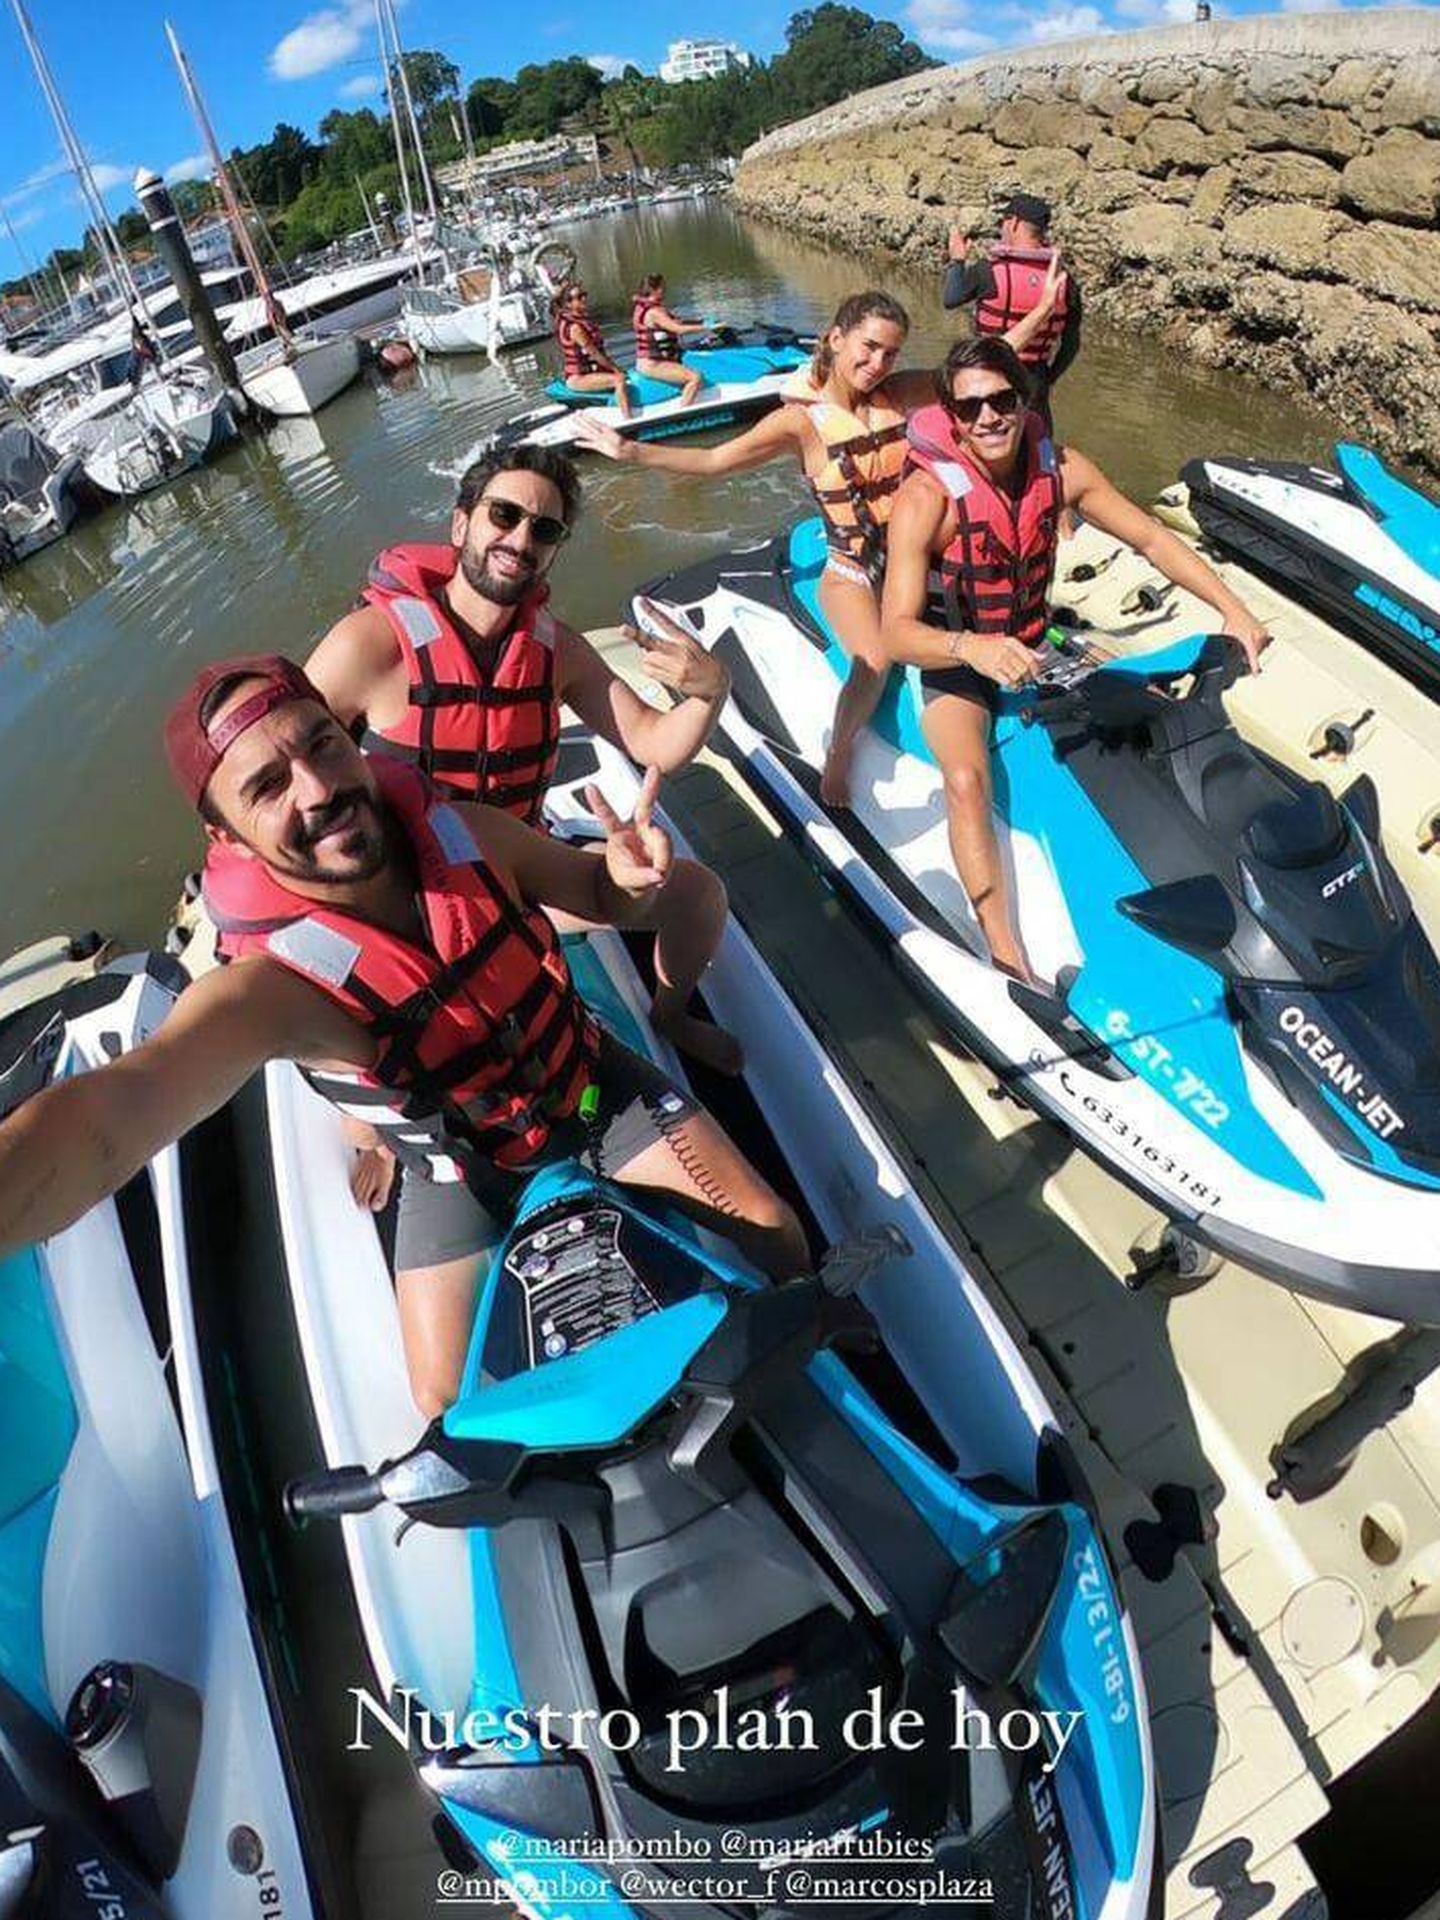 El grupo de amigos disfruta de la experiencia de montar en moto de agua. (Instagram/@mariapombo)